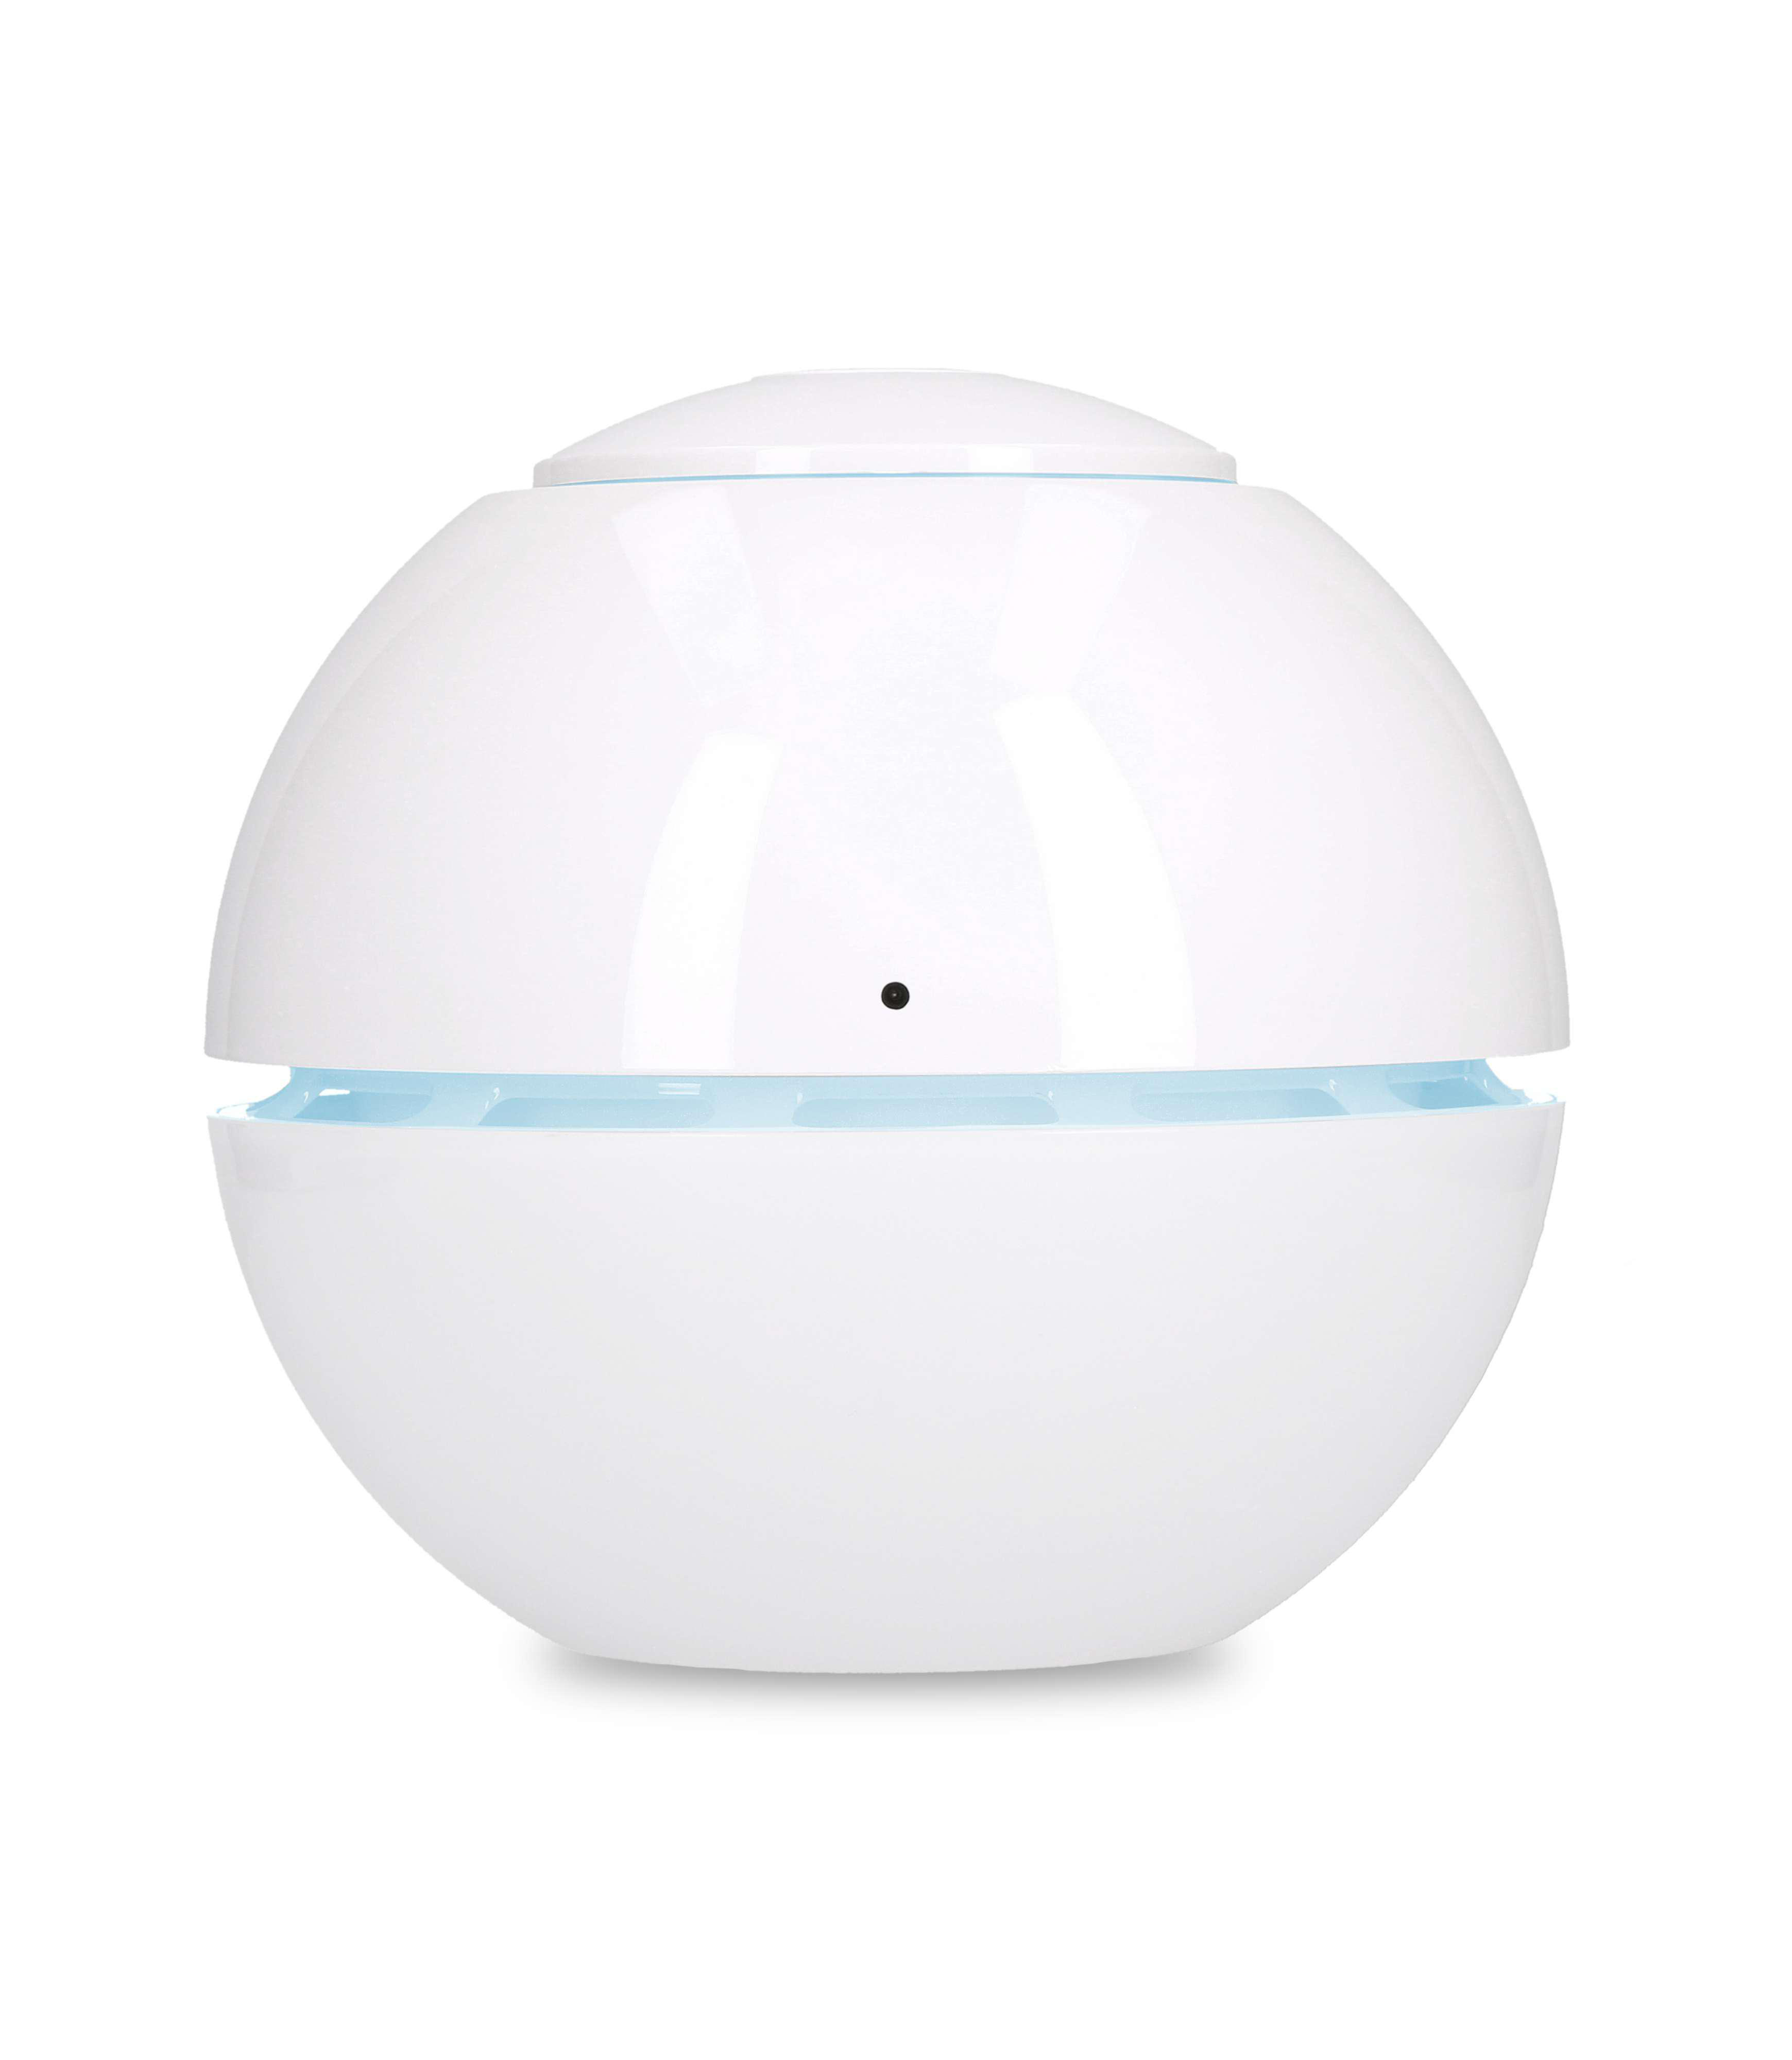 DUUX DXUH04 Sphere Luftbefeuchter m²) Weiß 15 Raumgröße: (15 Watt, Ultrasonic